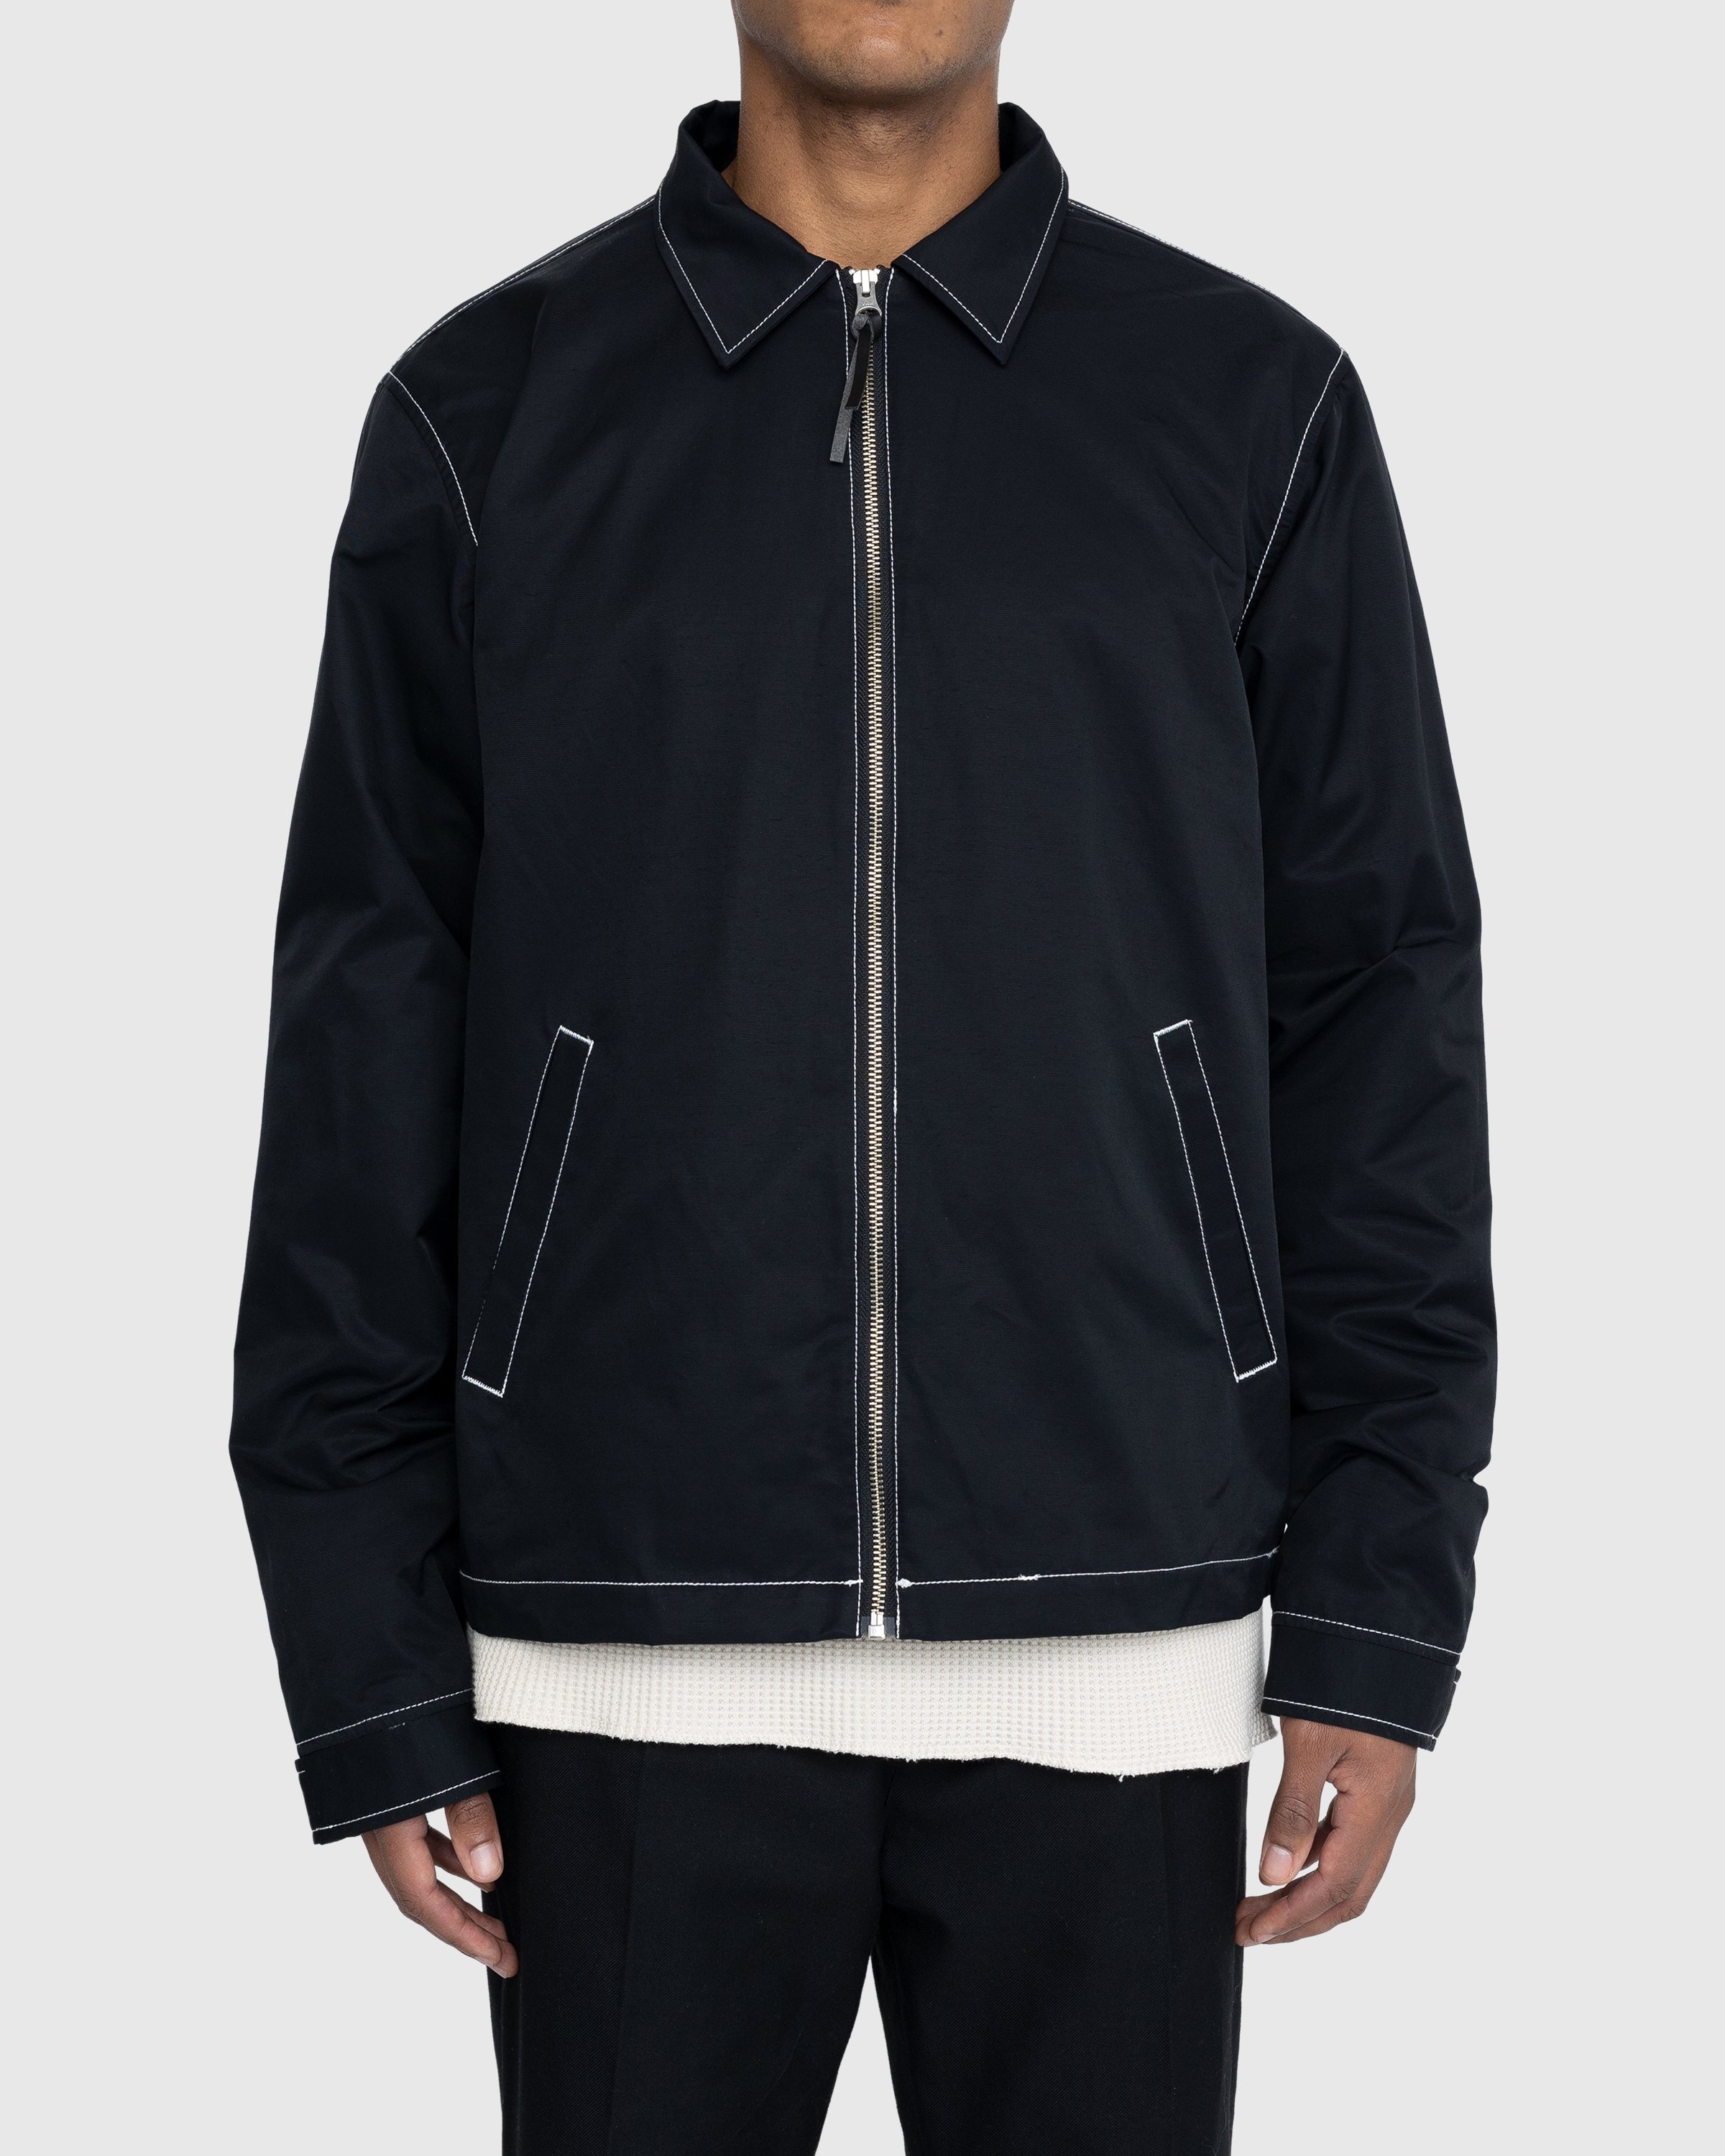 Highsnobiety – Brushed Nylon Jacket Black - Outerwear - Black - Image 2